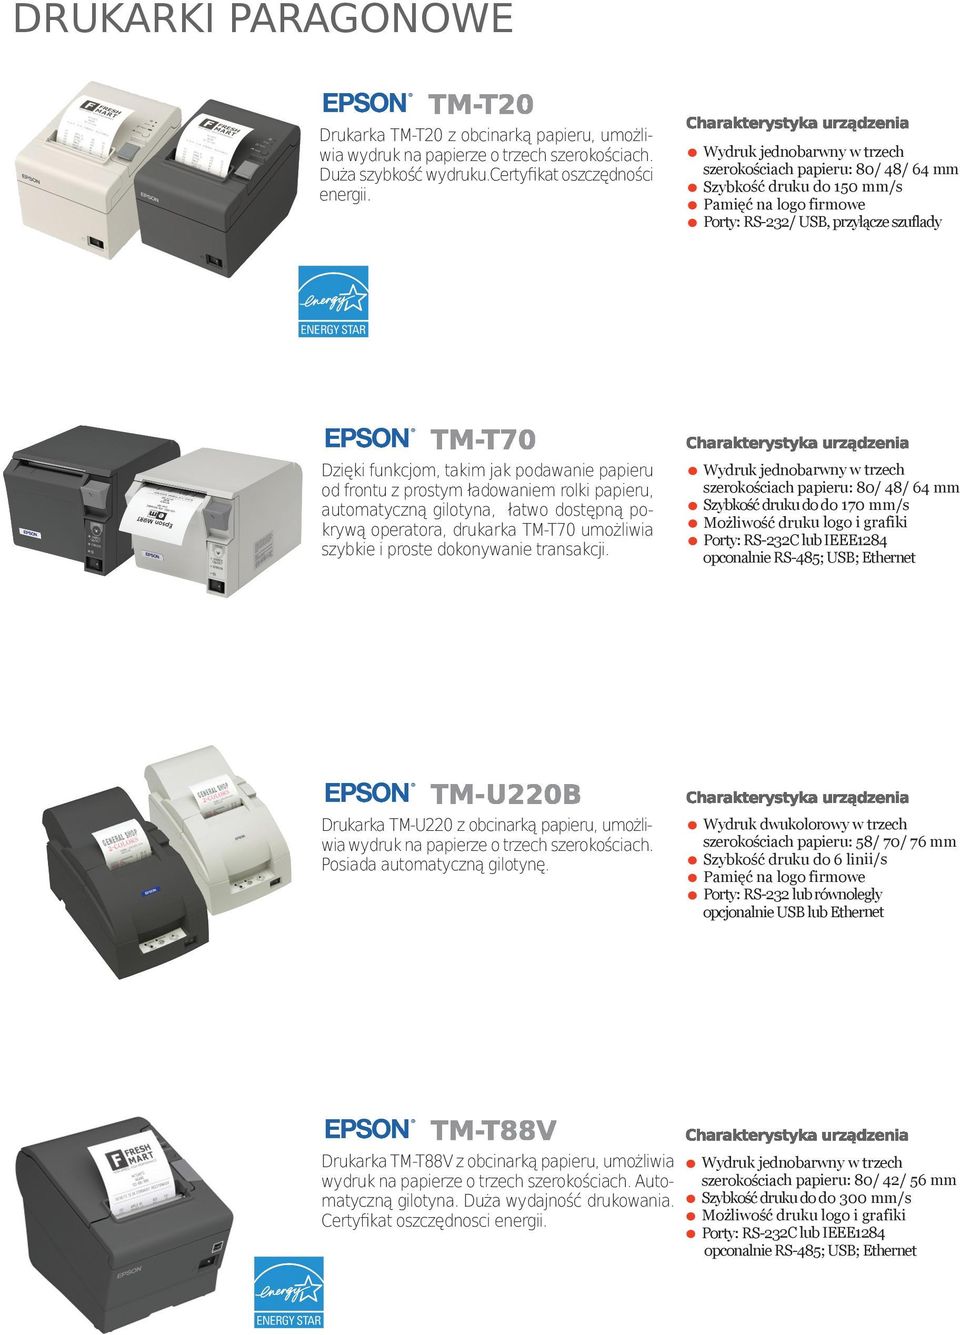 od frontu z prostym ładowaniem rolki papieru, automatyczną gilotyna, łatwo dostępną pokrywą operatora, drukarka TM-T70 umożliwia szybkie i proste dokonywanie transakcji.